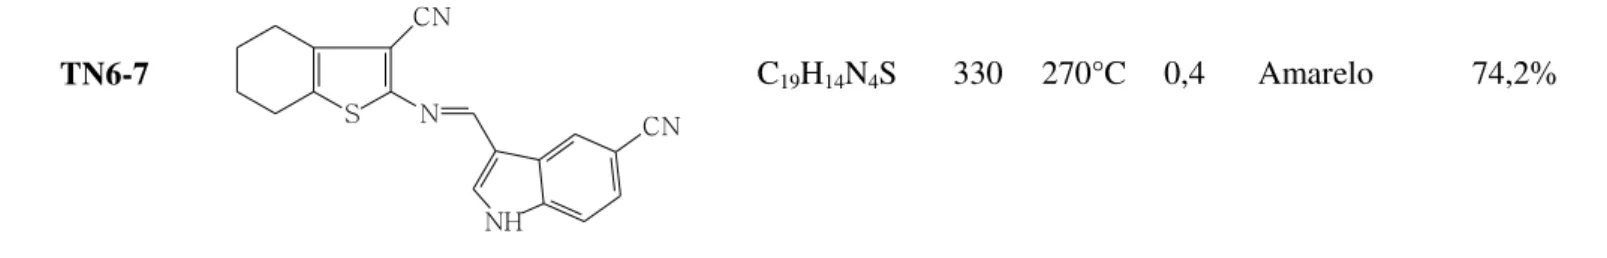 Tabela 3. Características físico-químicas e rendimentos dos derivados ciclohepta[b]tiofenos indólicos  (Série TN7) TN6-7  S CNN NH CN C 19 H 14 N 4 S  330 270°C  0,4  Amarelo  74,2% 